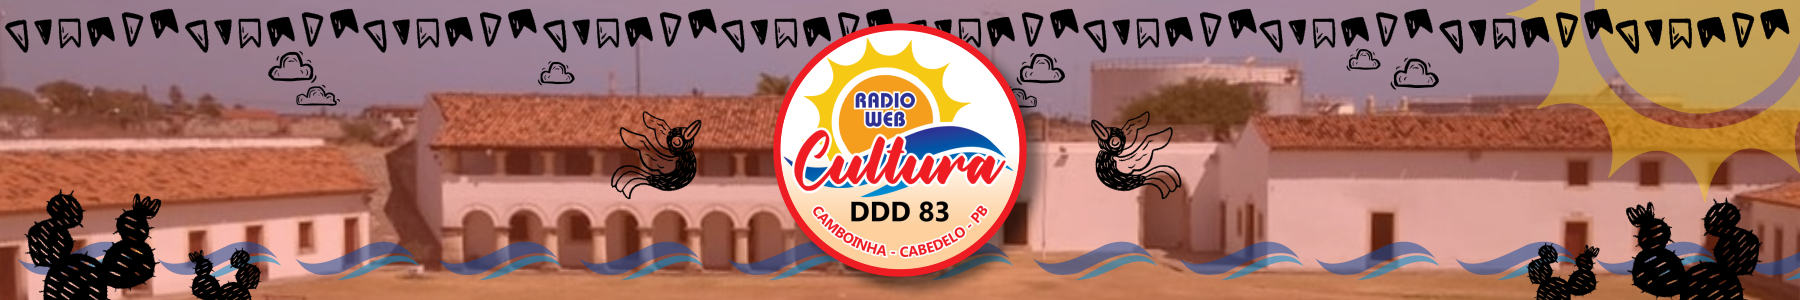  Rádio Web DDD 83 - 24 horas no ar